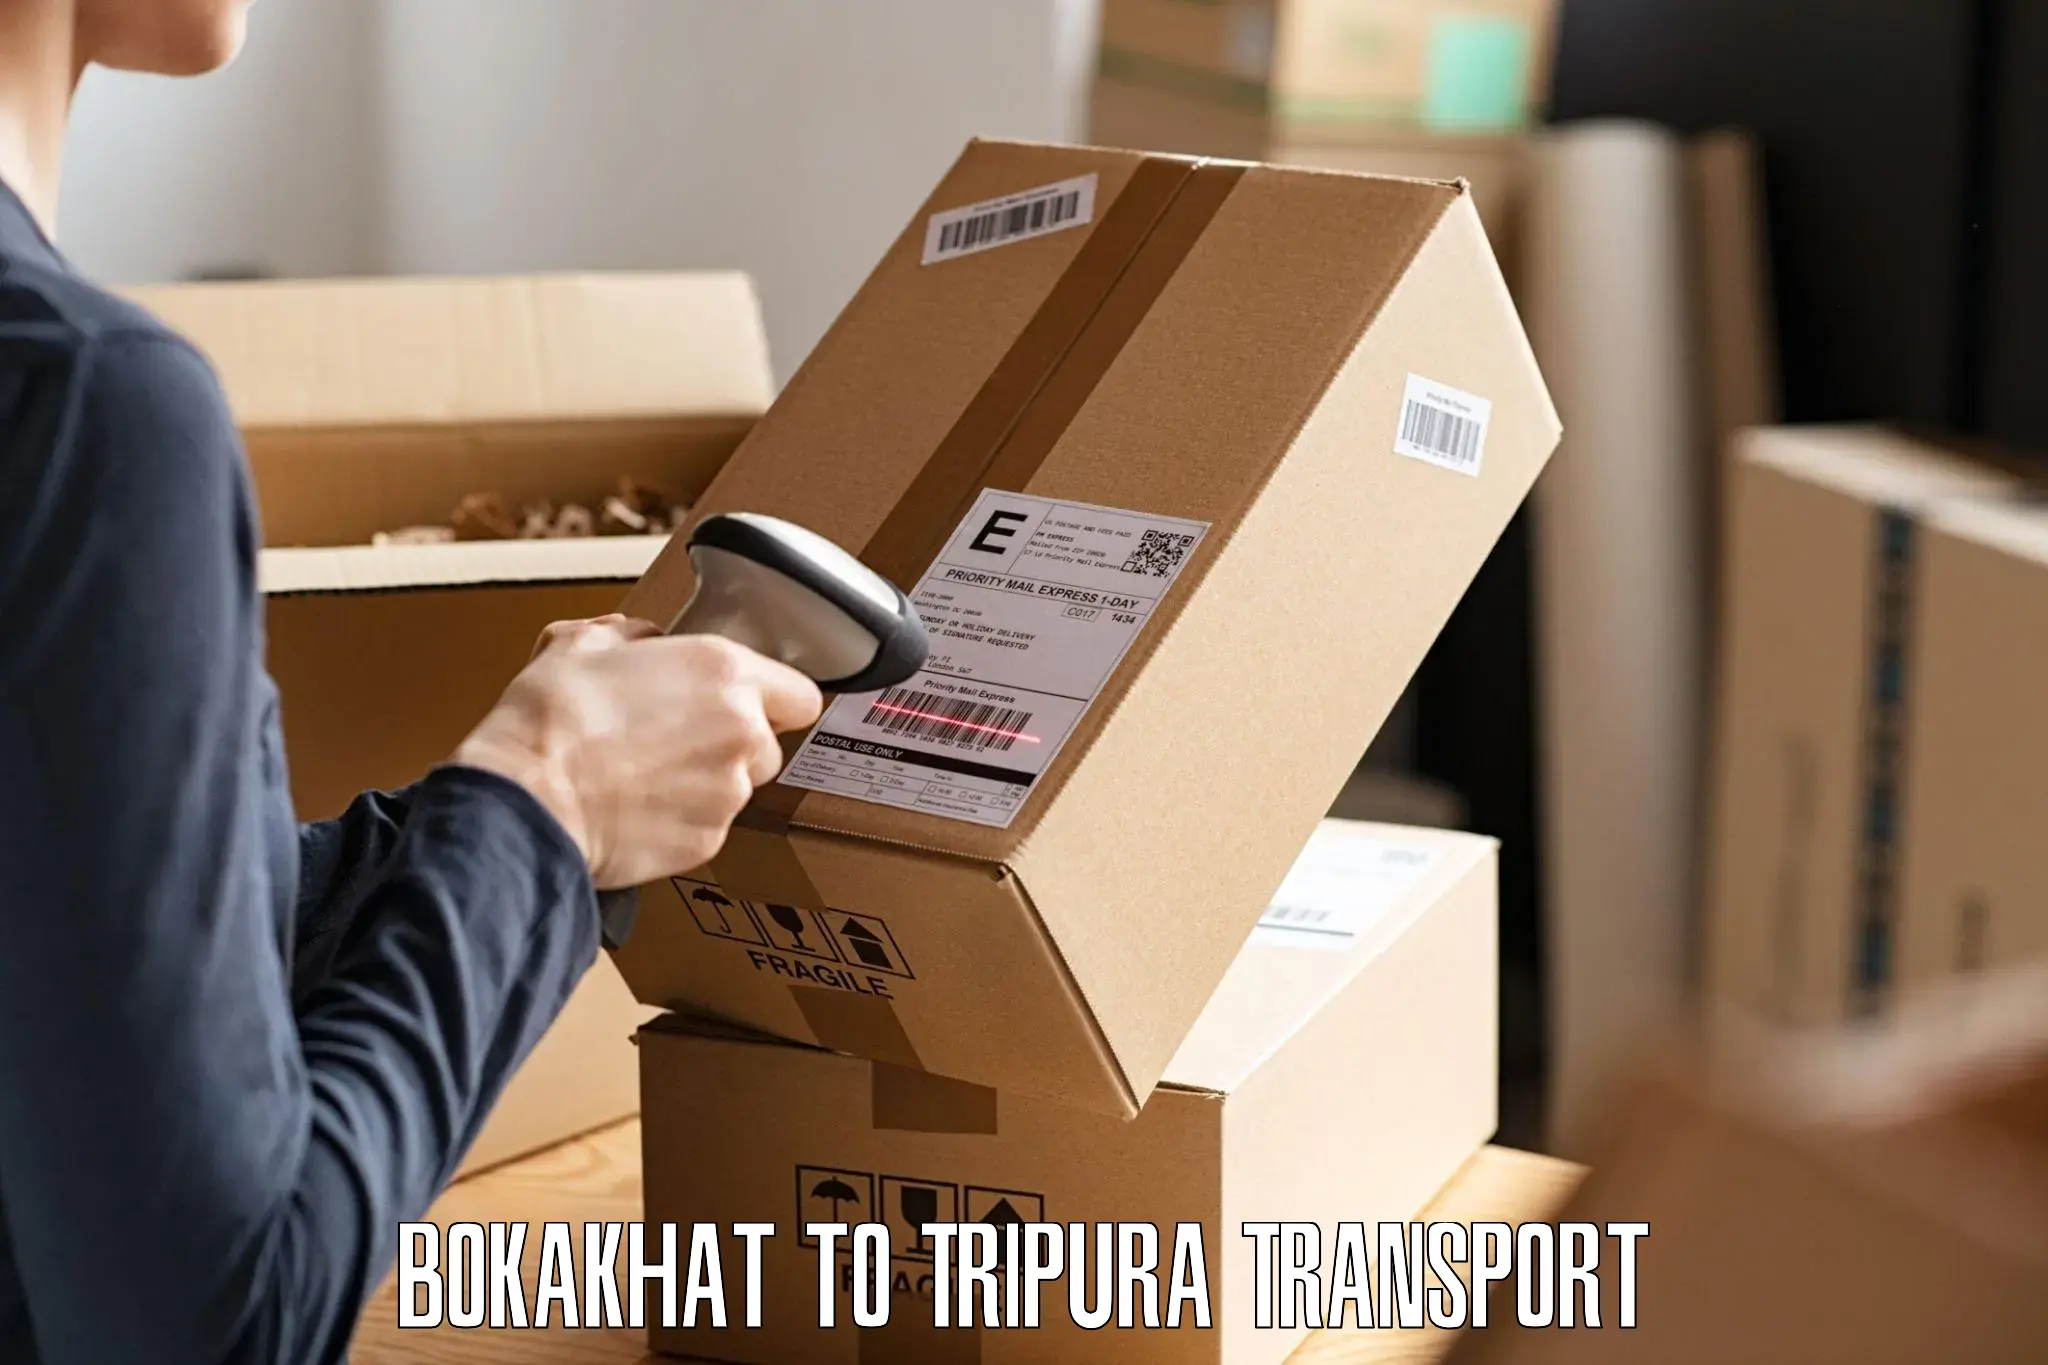 Parcel transport services Bokakhat to Udaipur Tripura